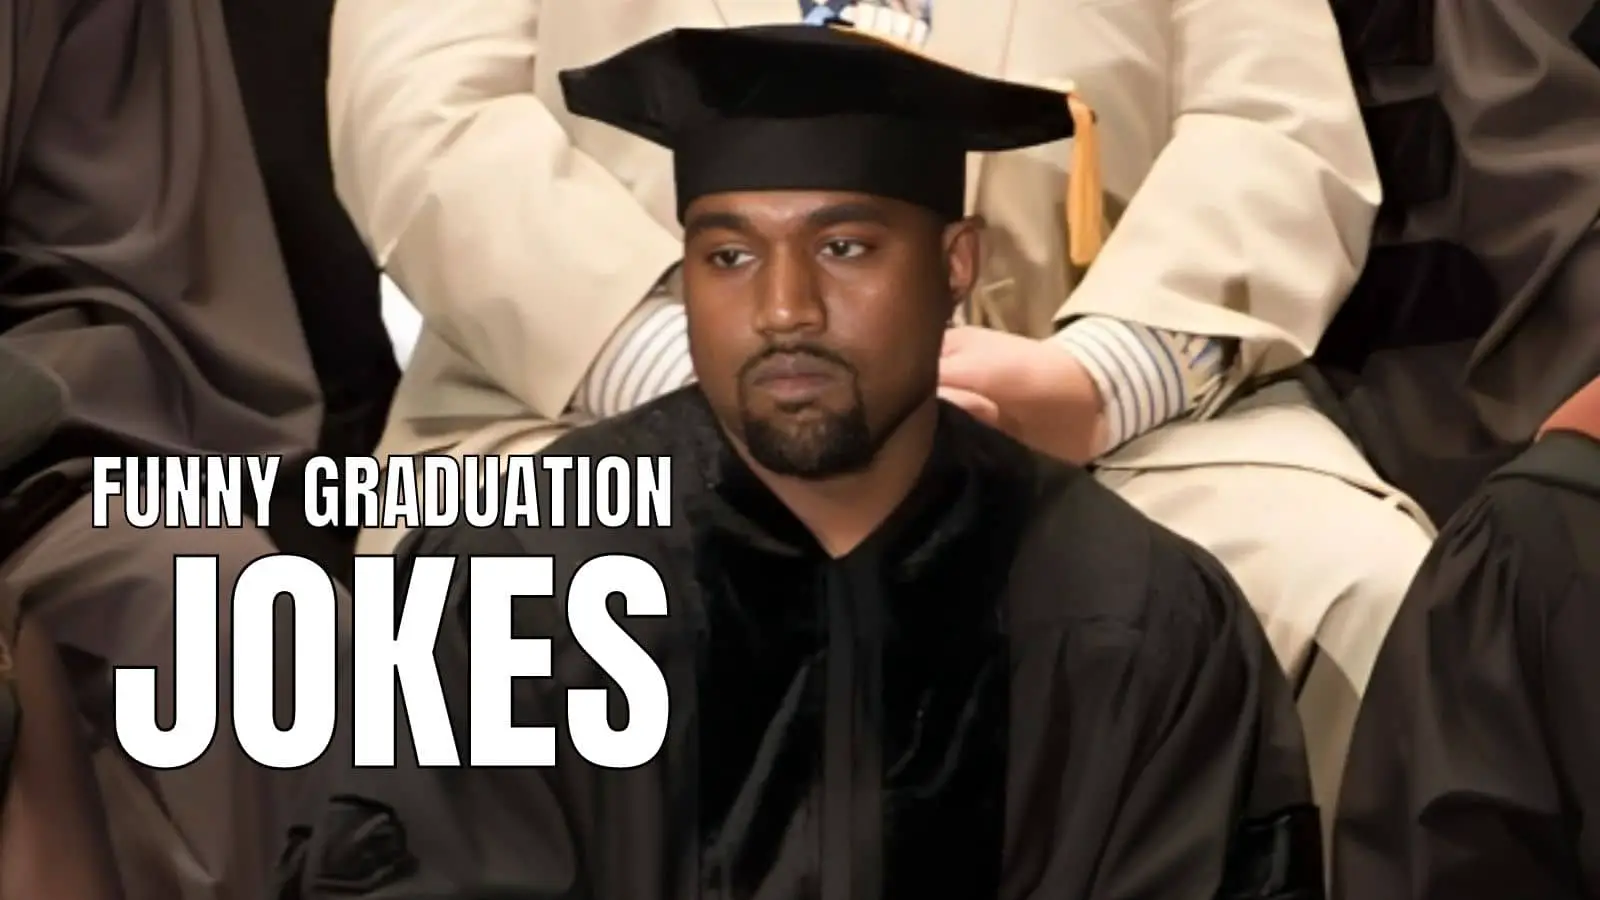 Funny Graduation Jokes on Speech